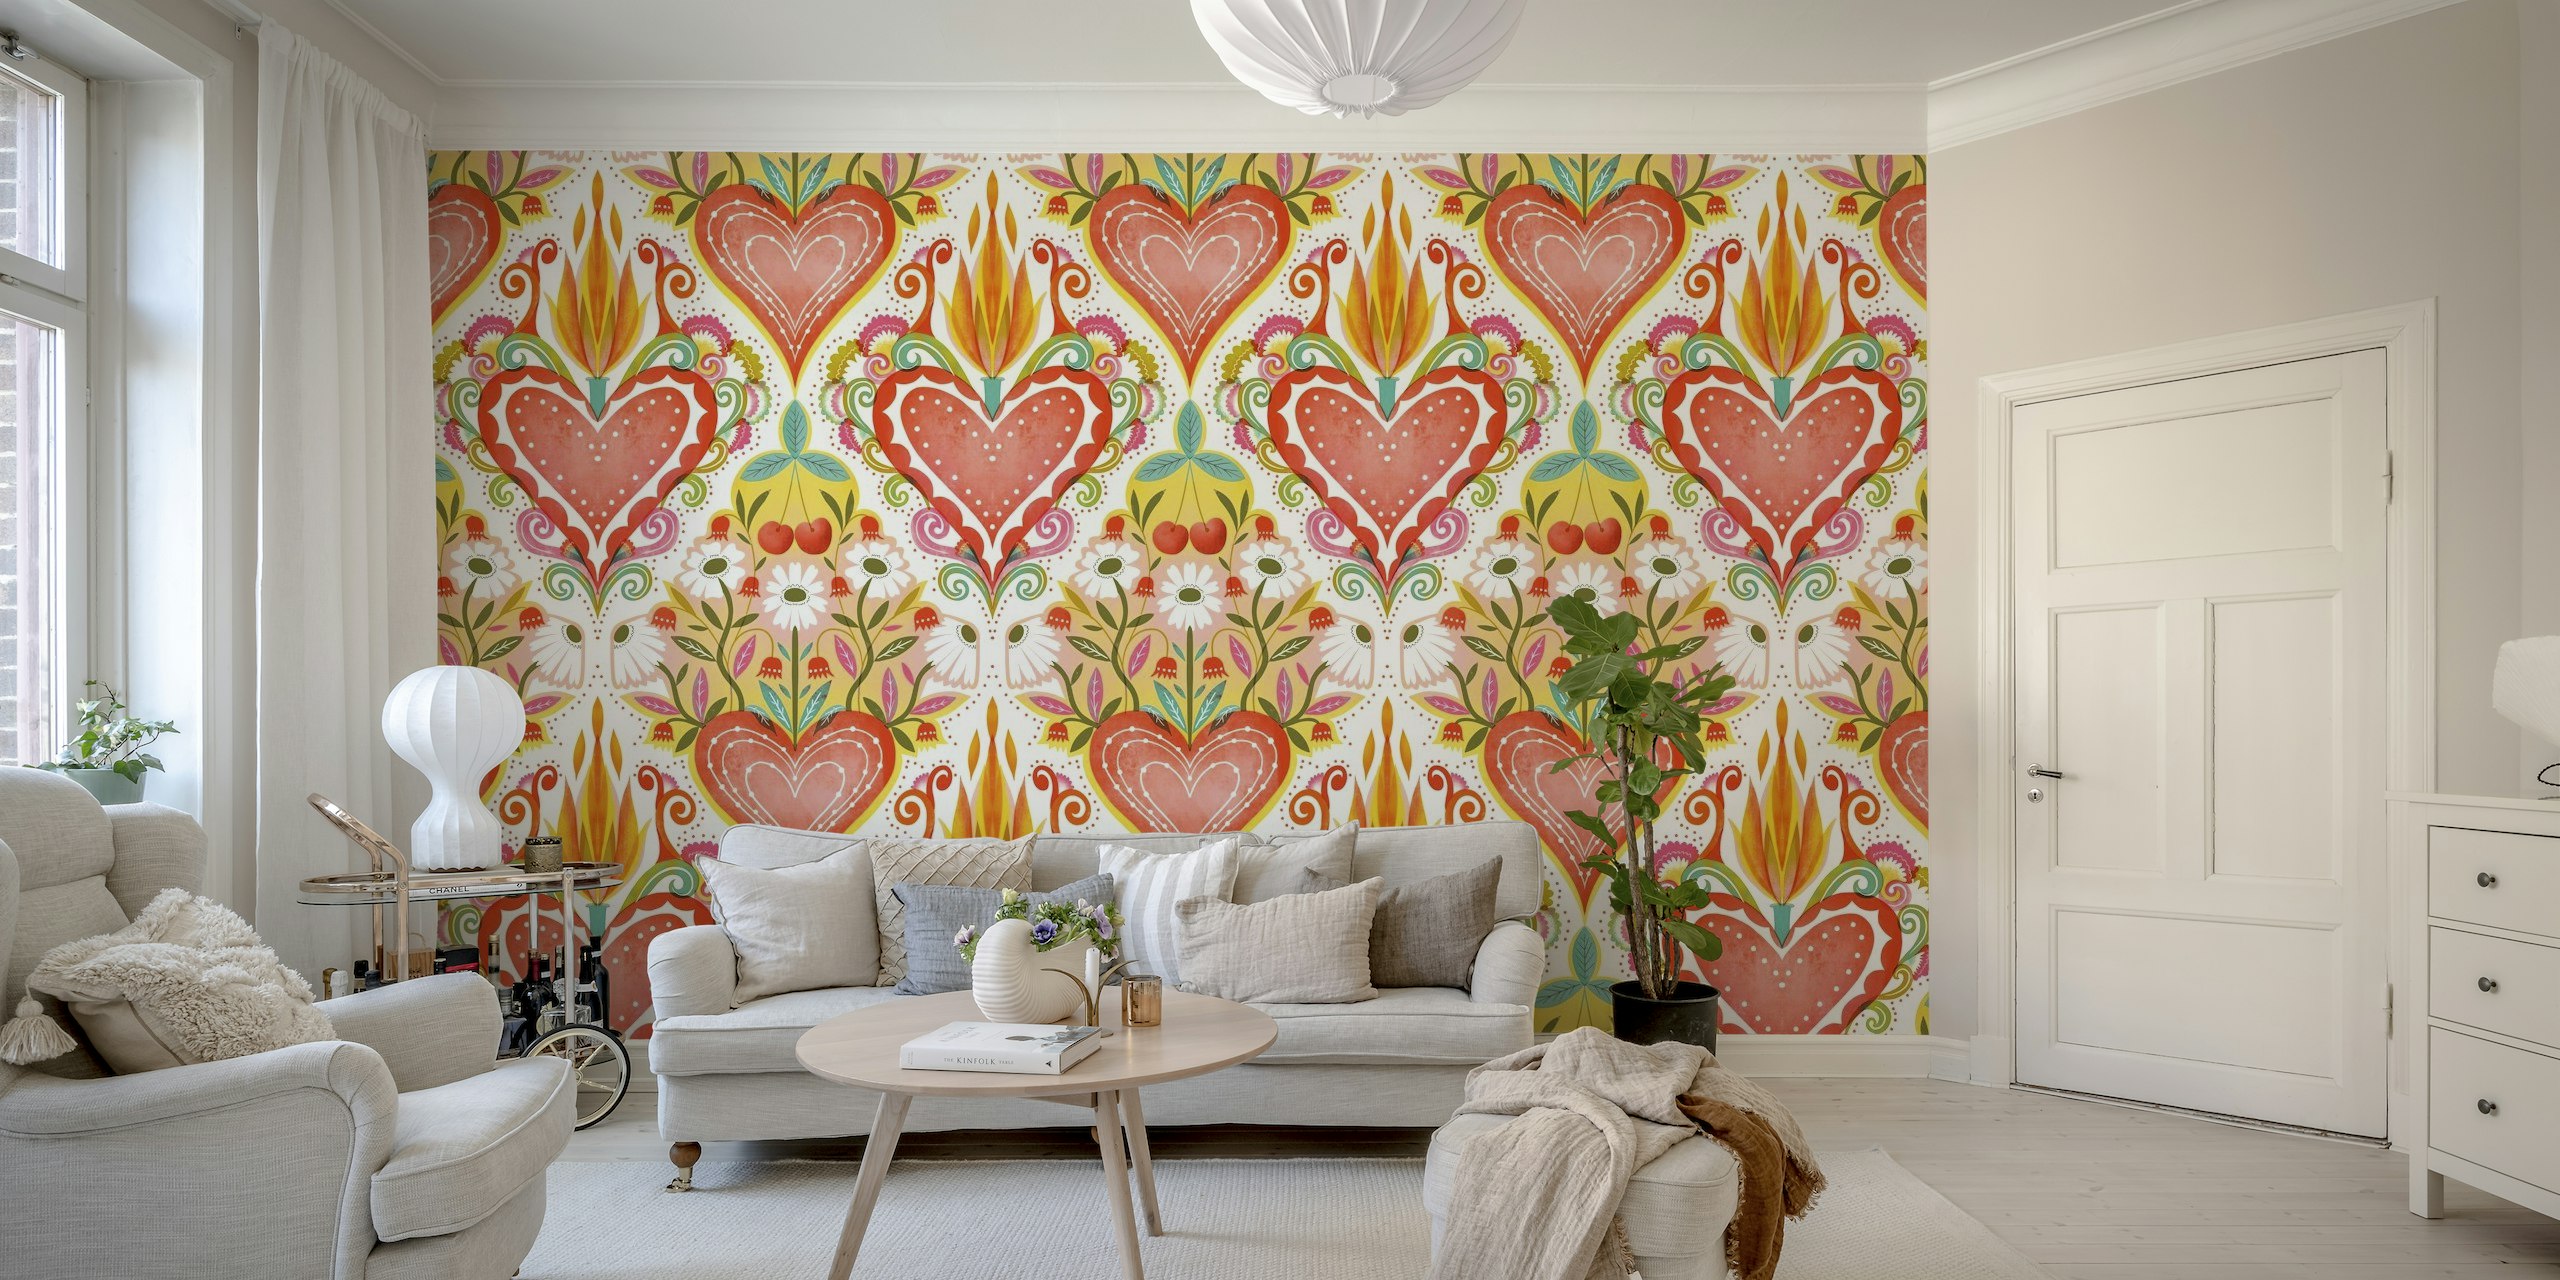 Farverigt folk-inspireret vægmaleri med et stort centralt hjerte med flammer og mindre omgivende hjerter og blomstermønstre.